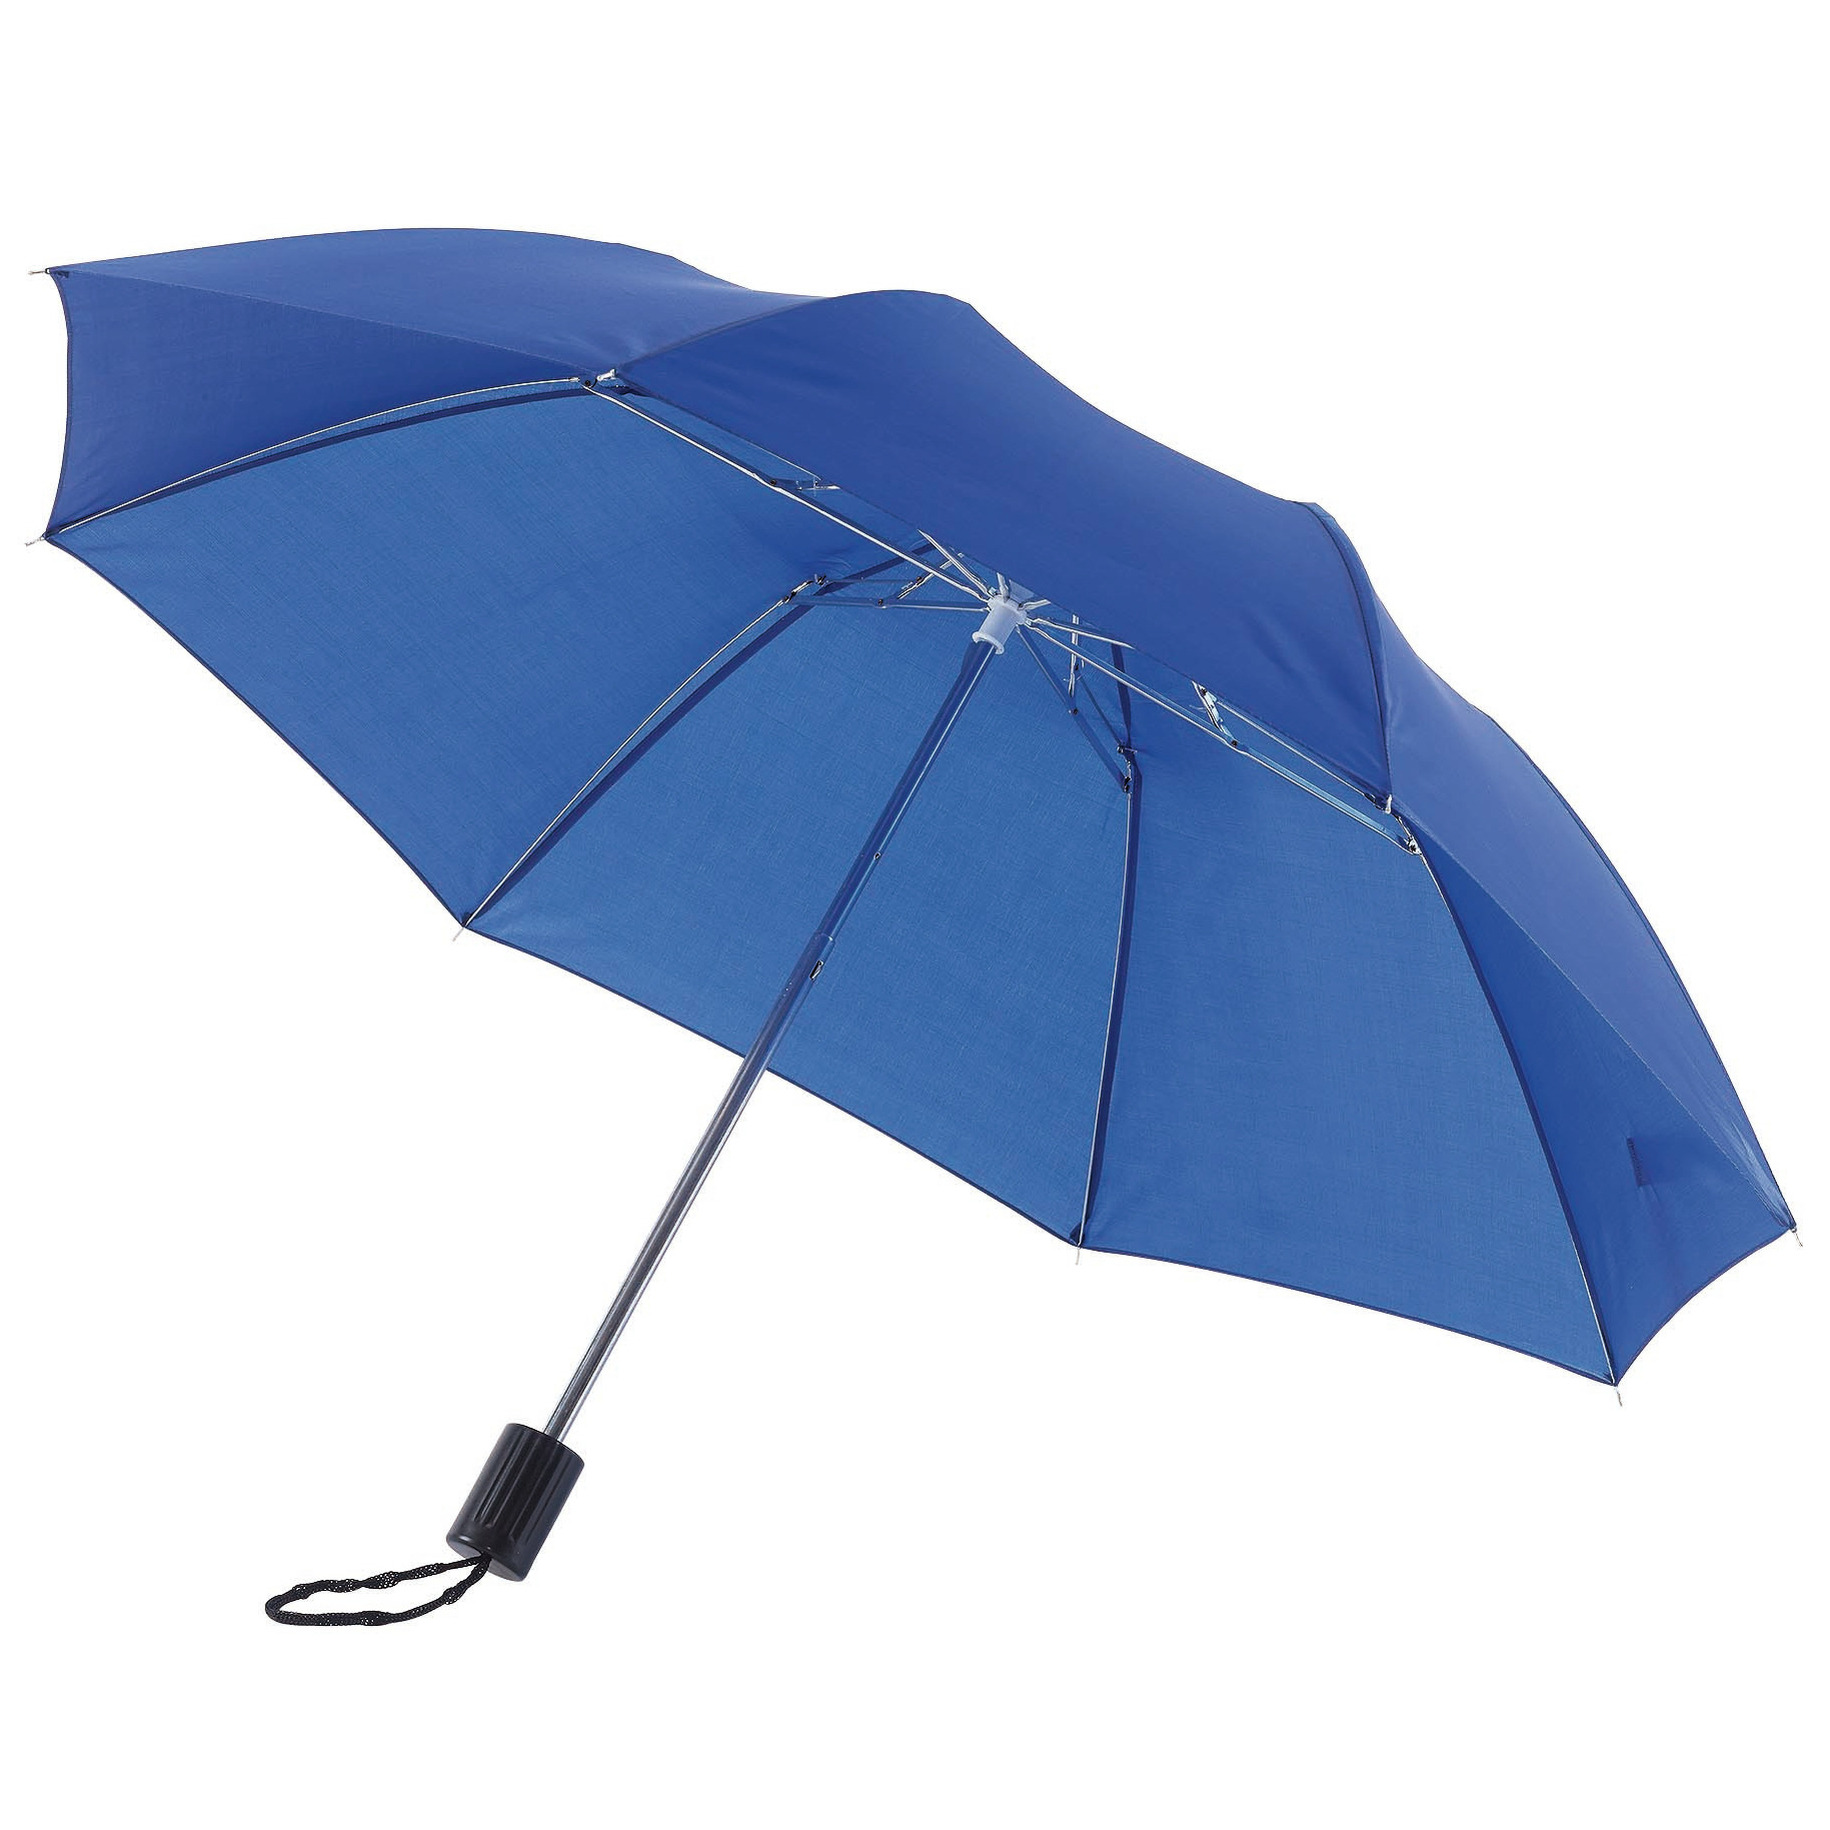 Blauwe paraplu uitklapbaar met hoes 85 cm